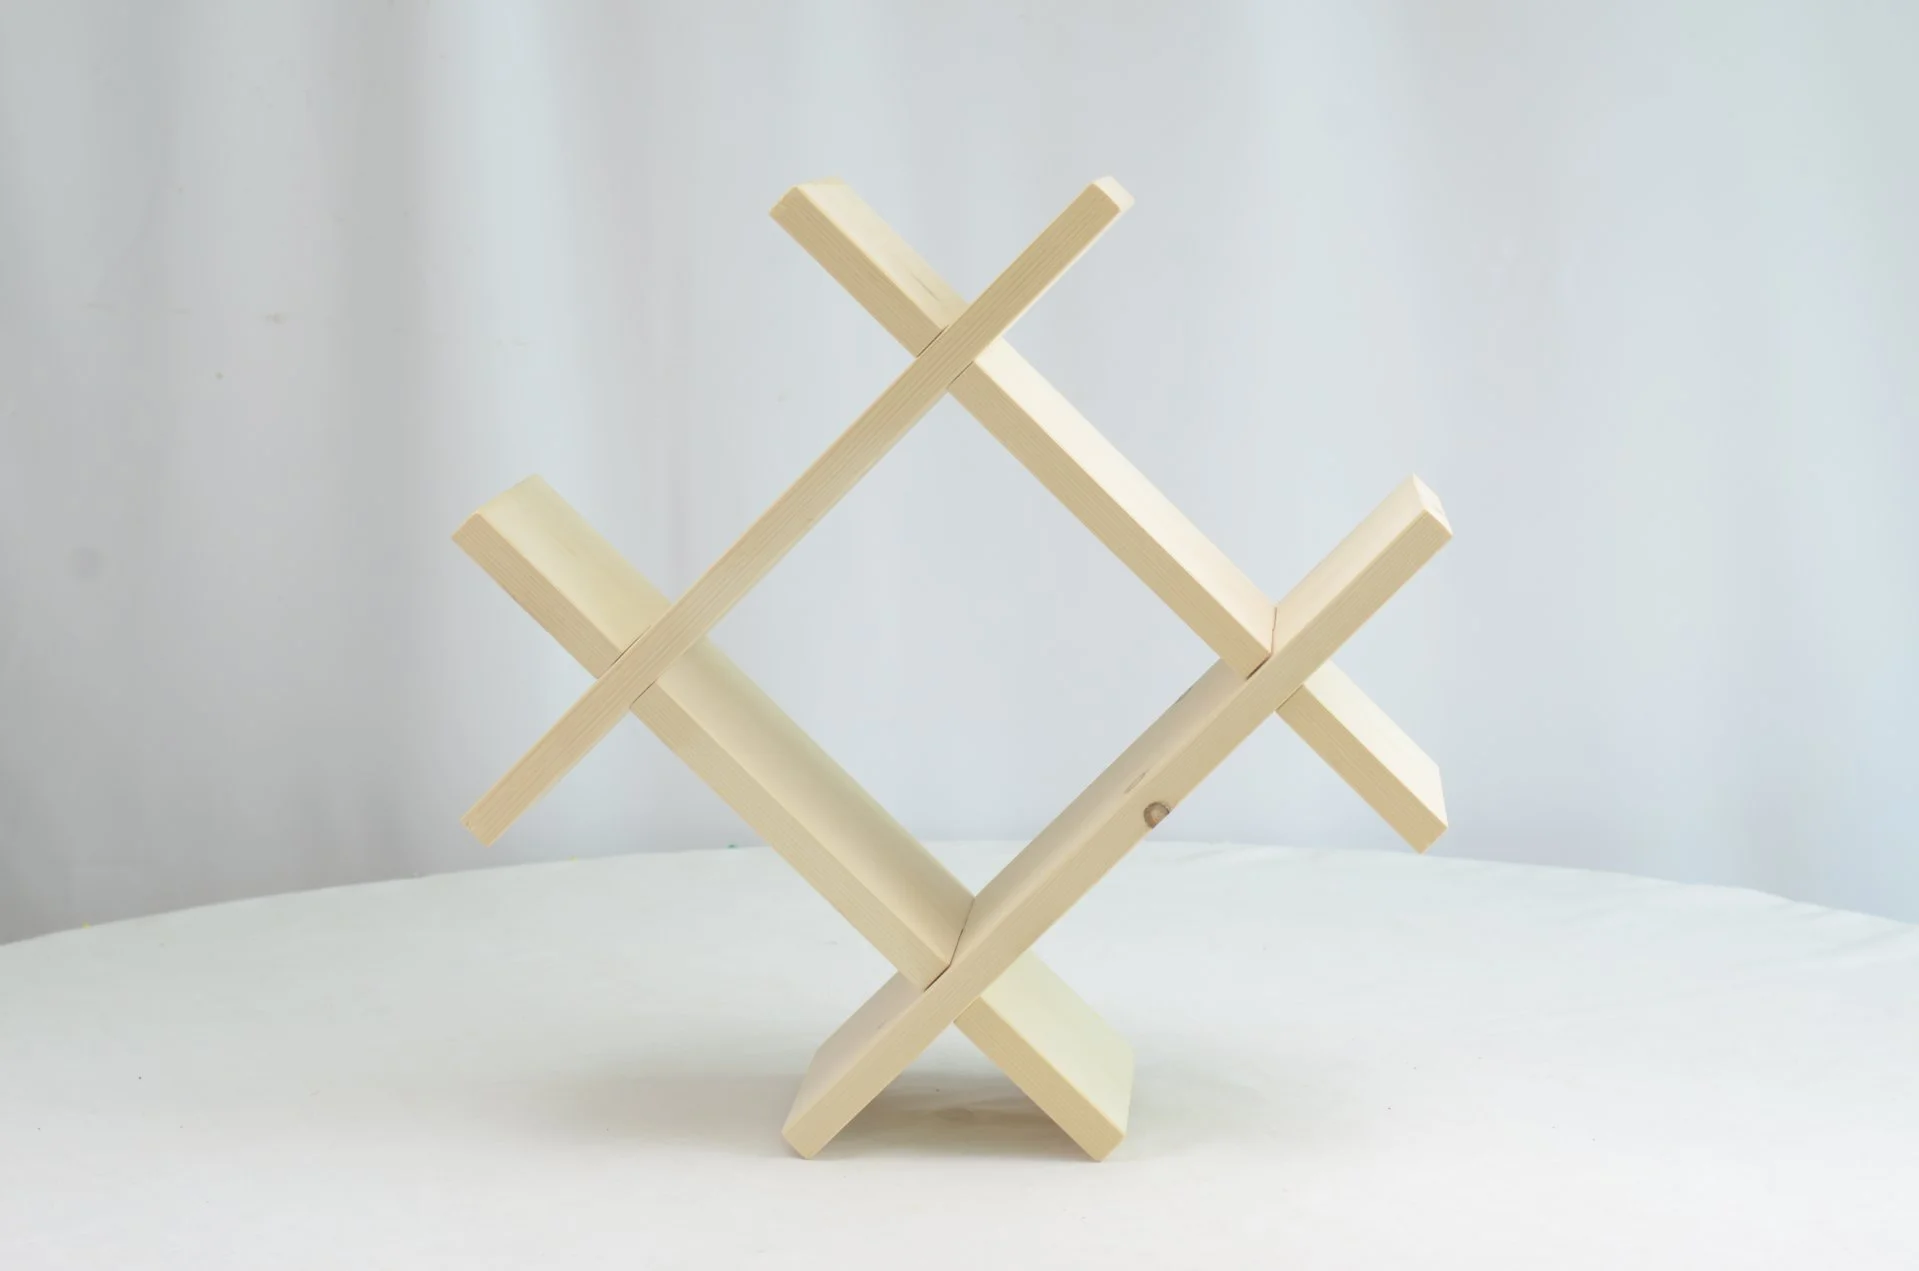 3D Bookshelf Holder - For floor, table, or wall LLOEL